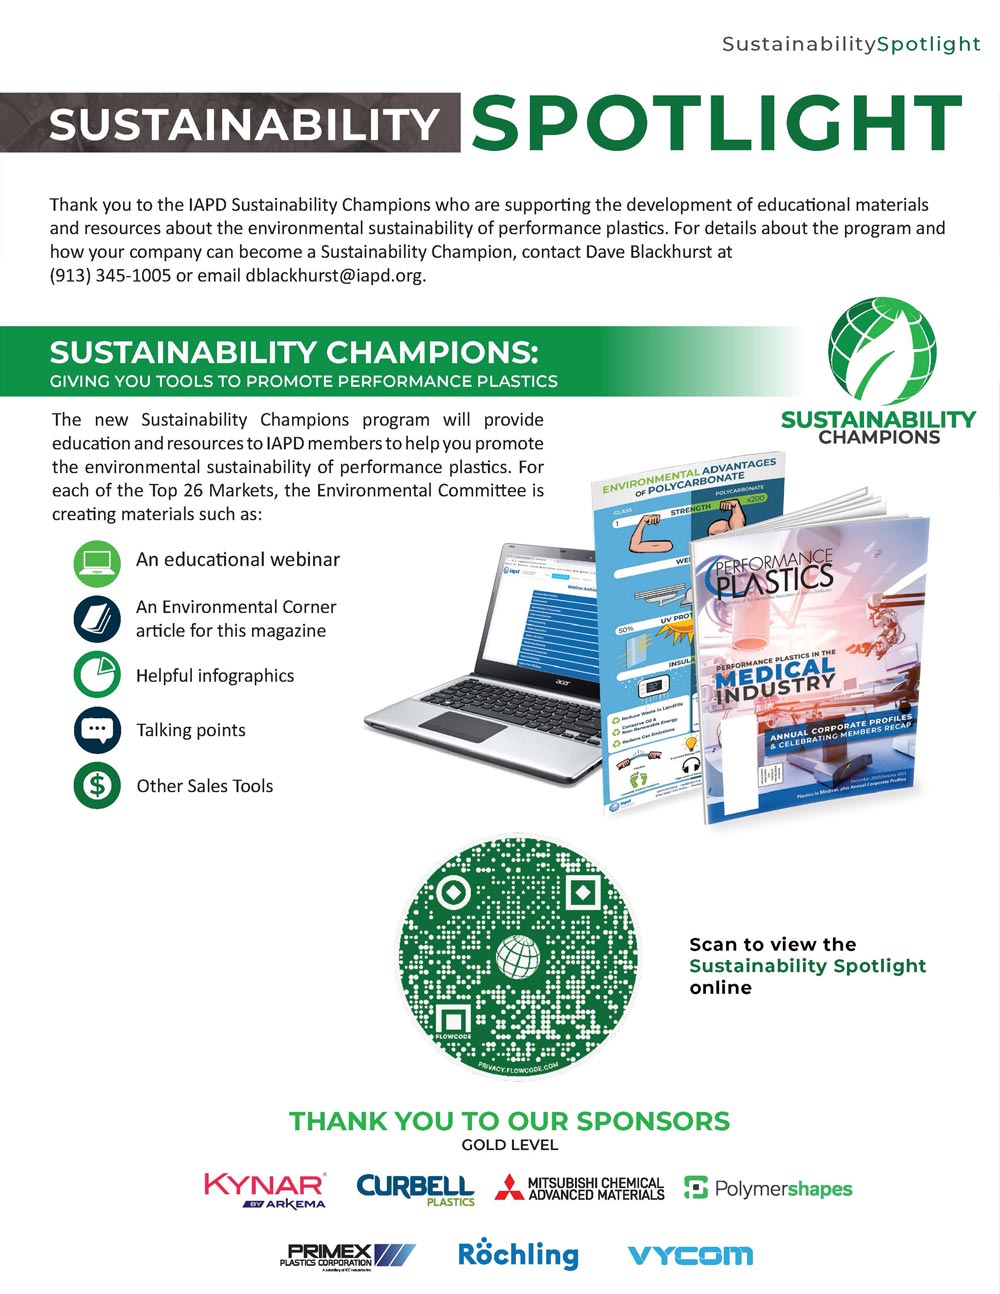 Sustainability Spotlight Advertisement